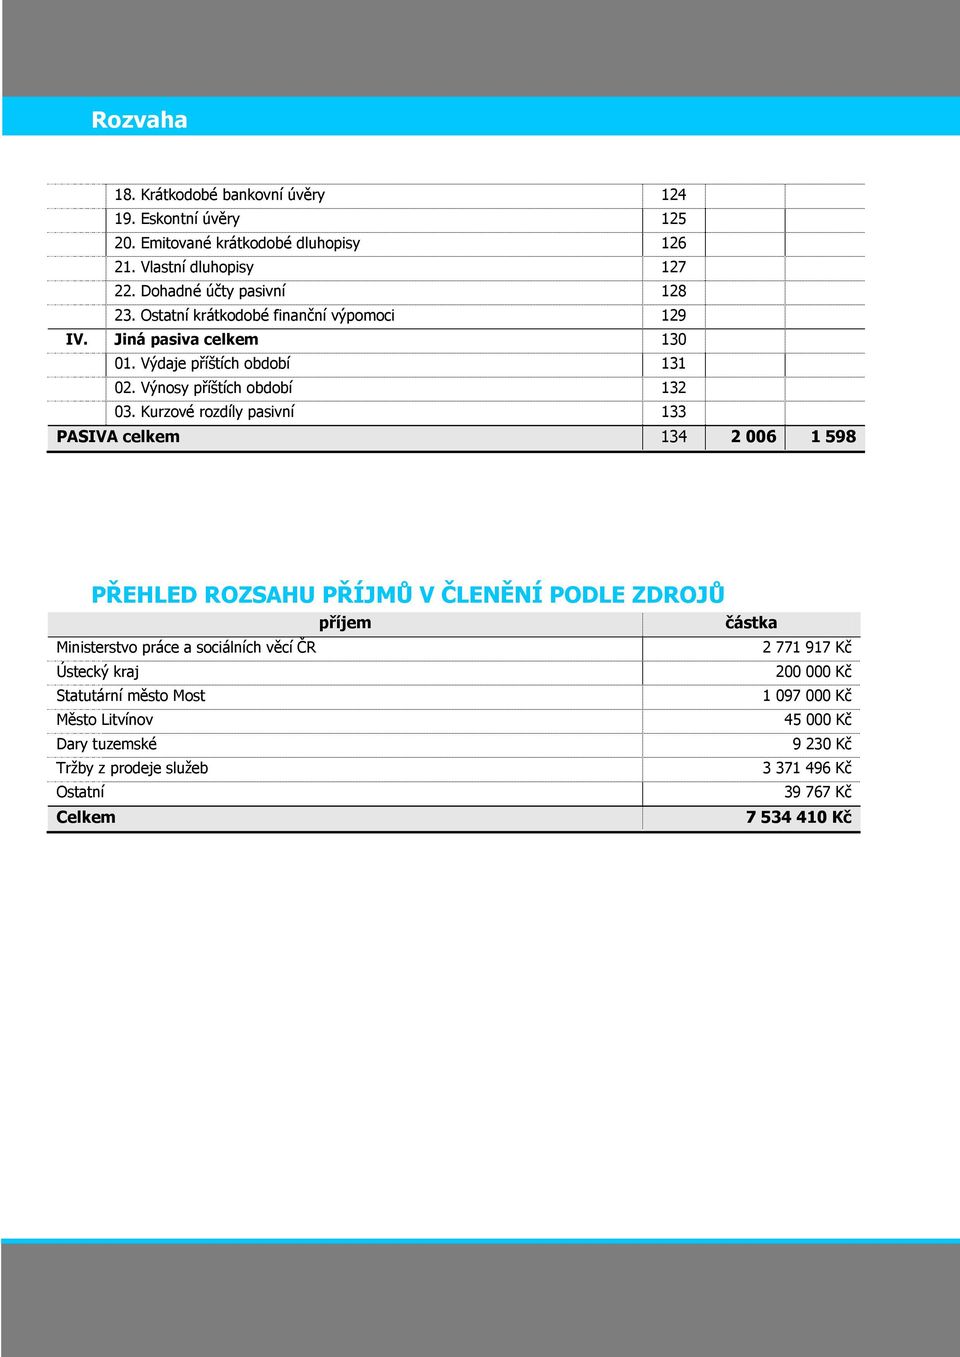 Kurzové rozdíly pasivní 133 PASIVA celkem 134 2 006 1 598 PŘEHLED ROZSAHU PŘÍJMŮ V ČLENĚNÍ PODLE ZDROJŮ příjem částka Ministerstvo práce a sociálních věcí ČR 2